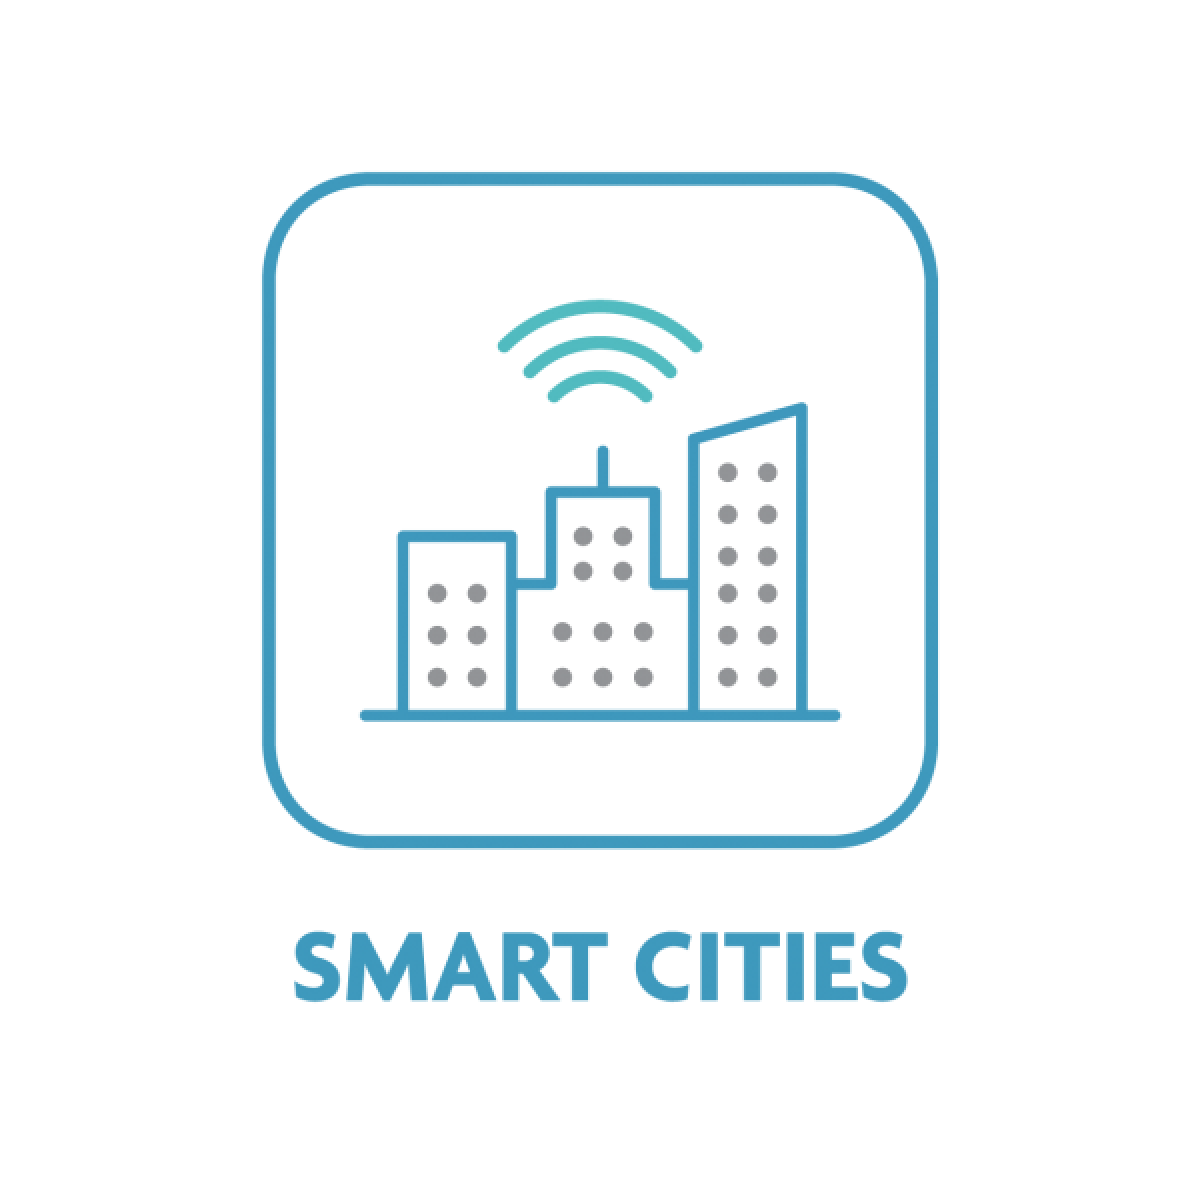 Smart cities logo